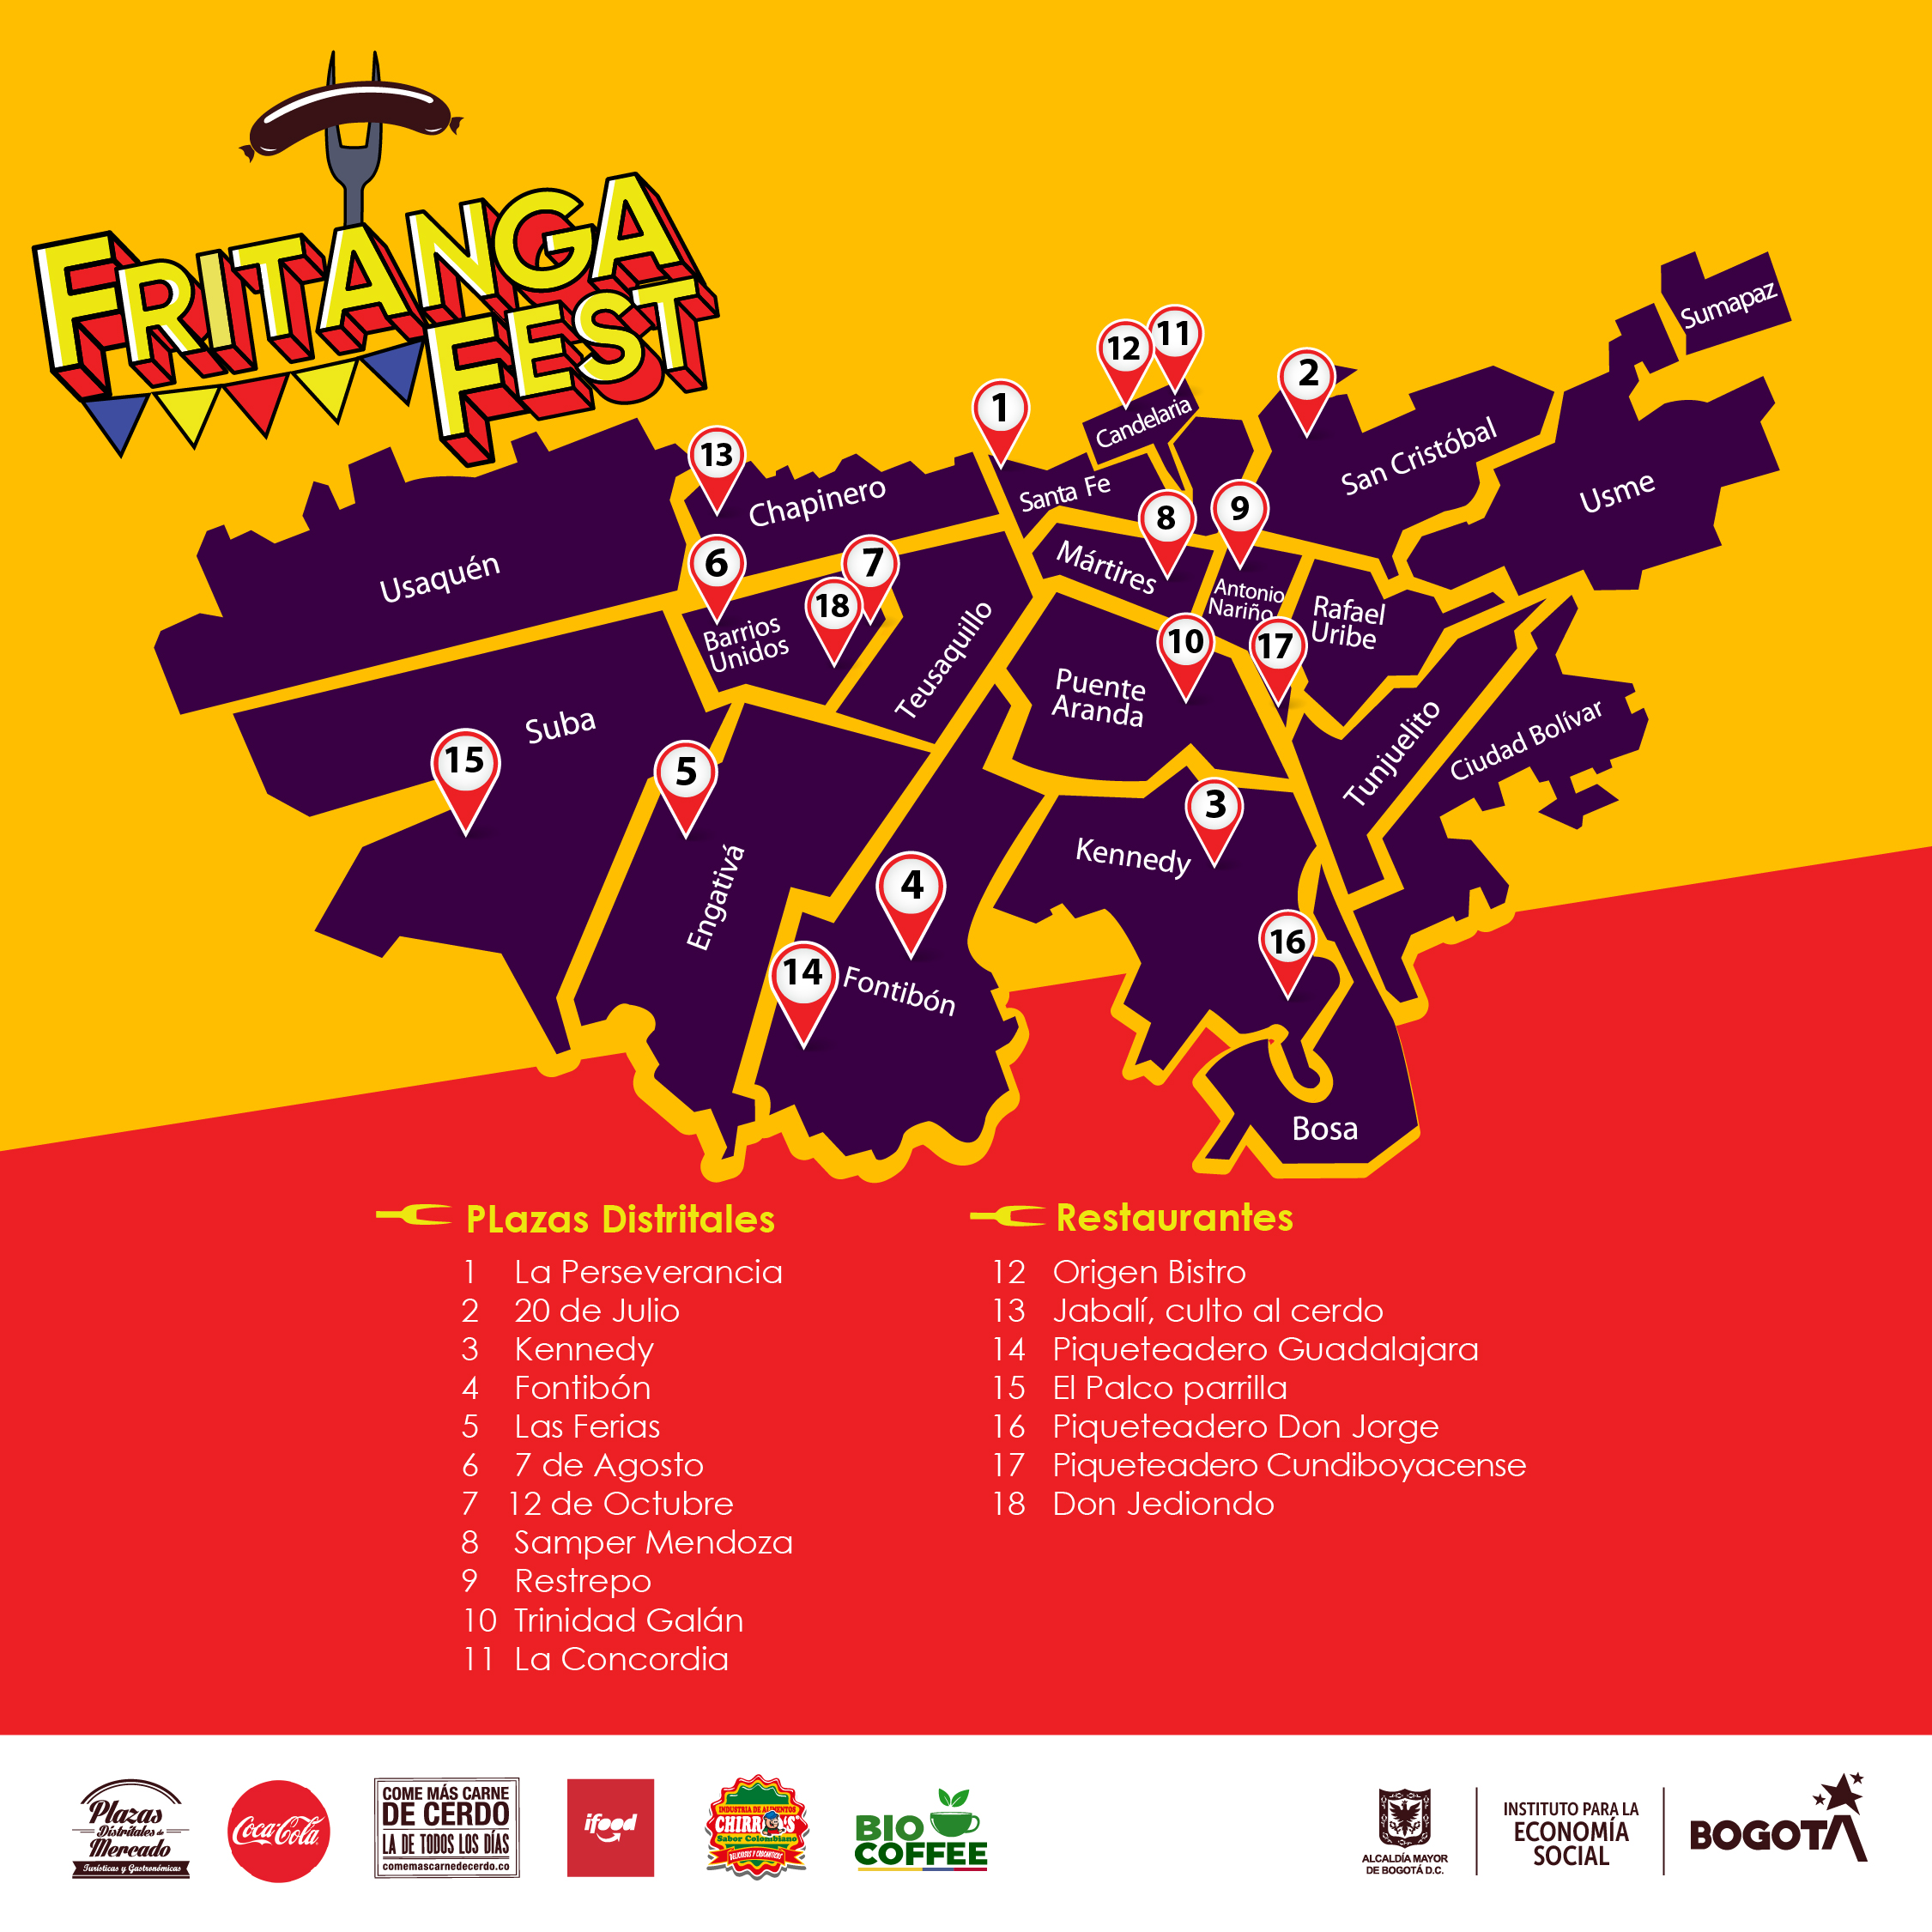 Llegó Fritanga Fest